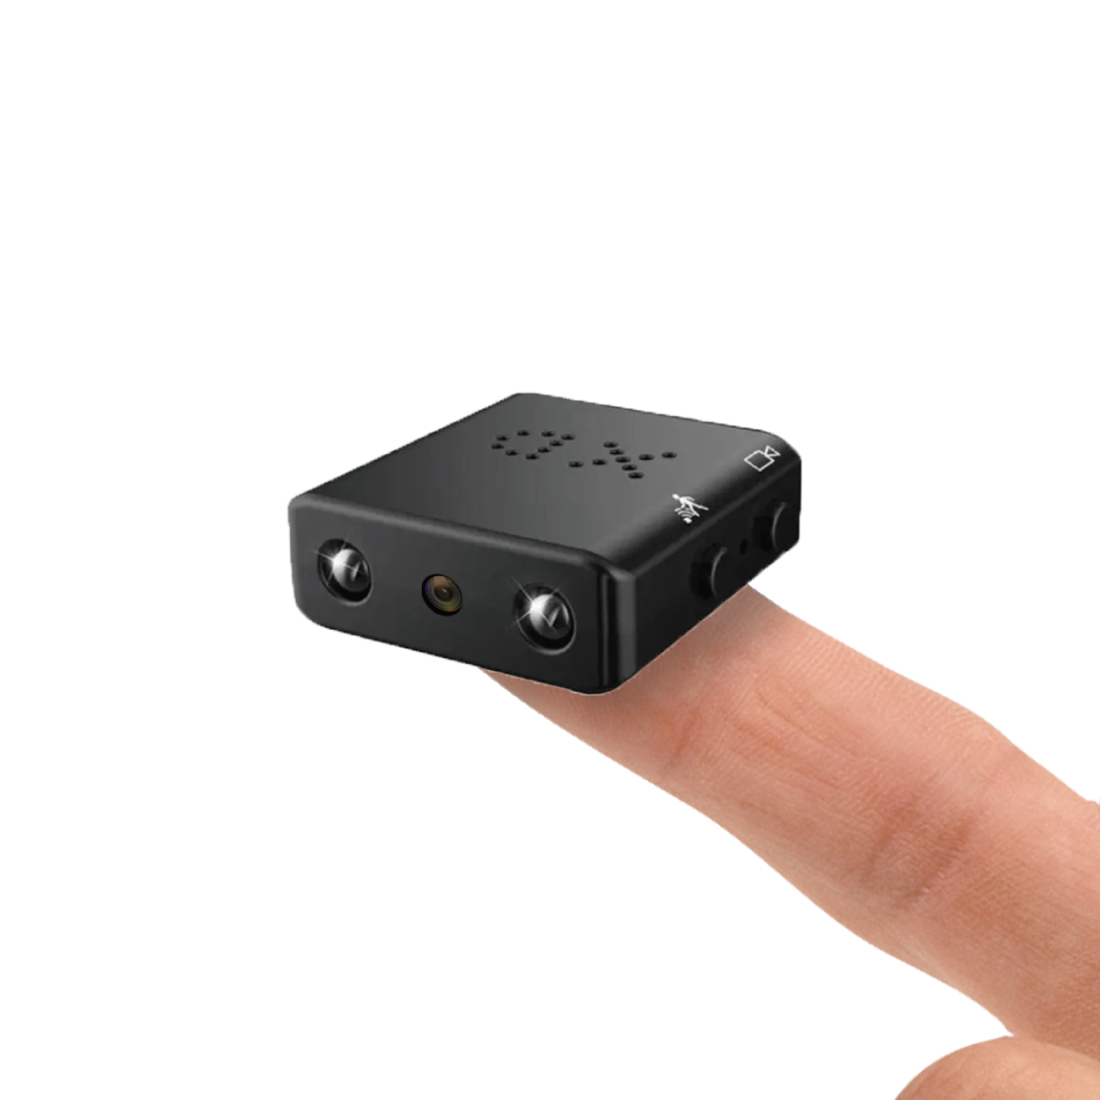 小型防犯カメラ DVR-S1 防犯カメラの商品画像